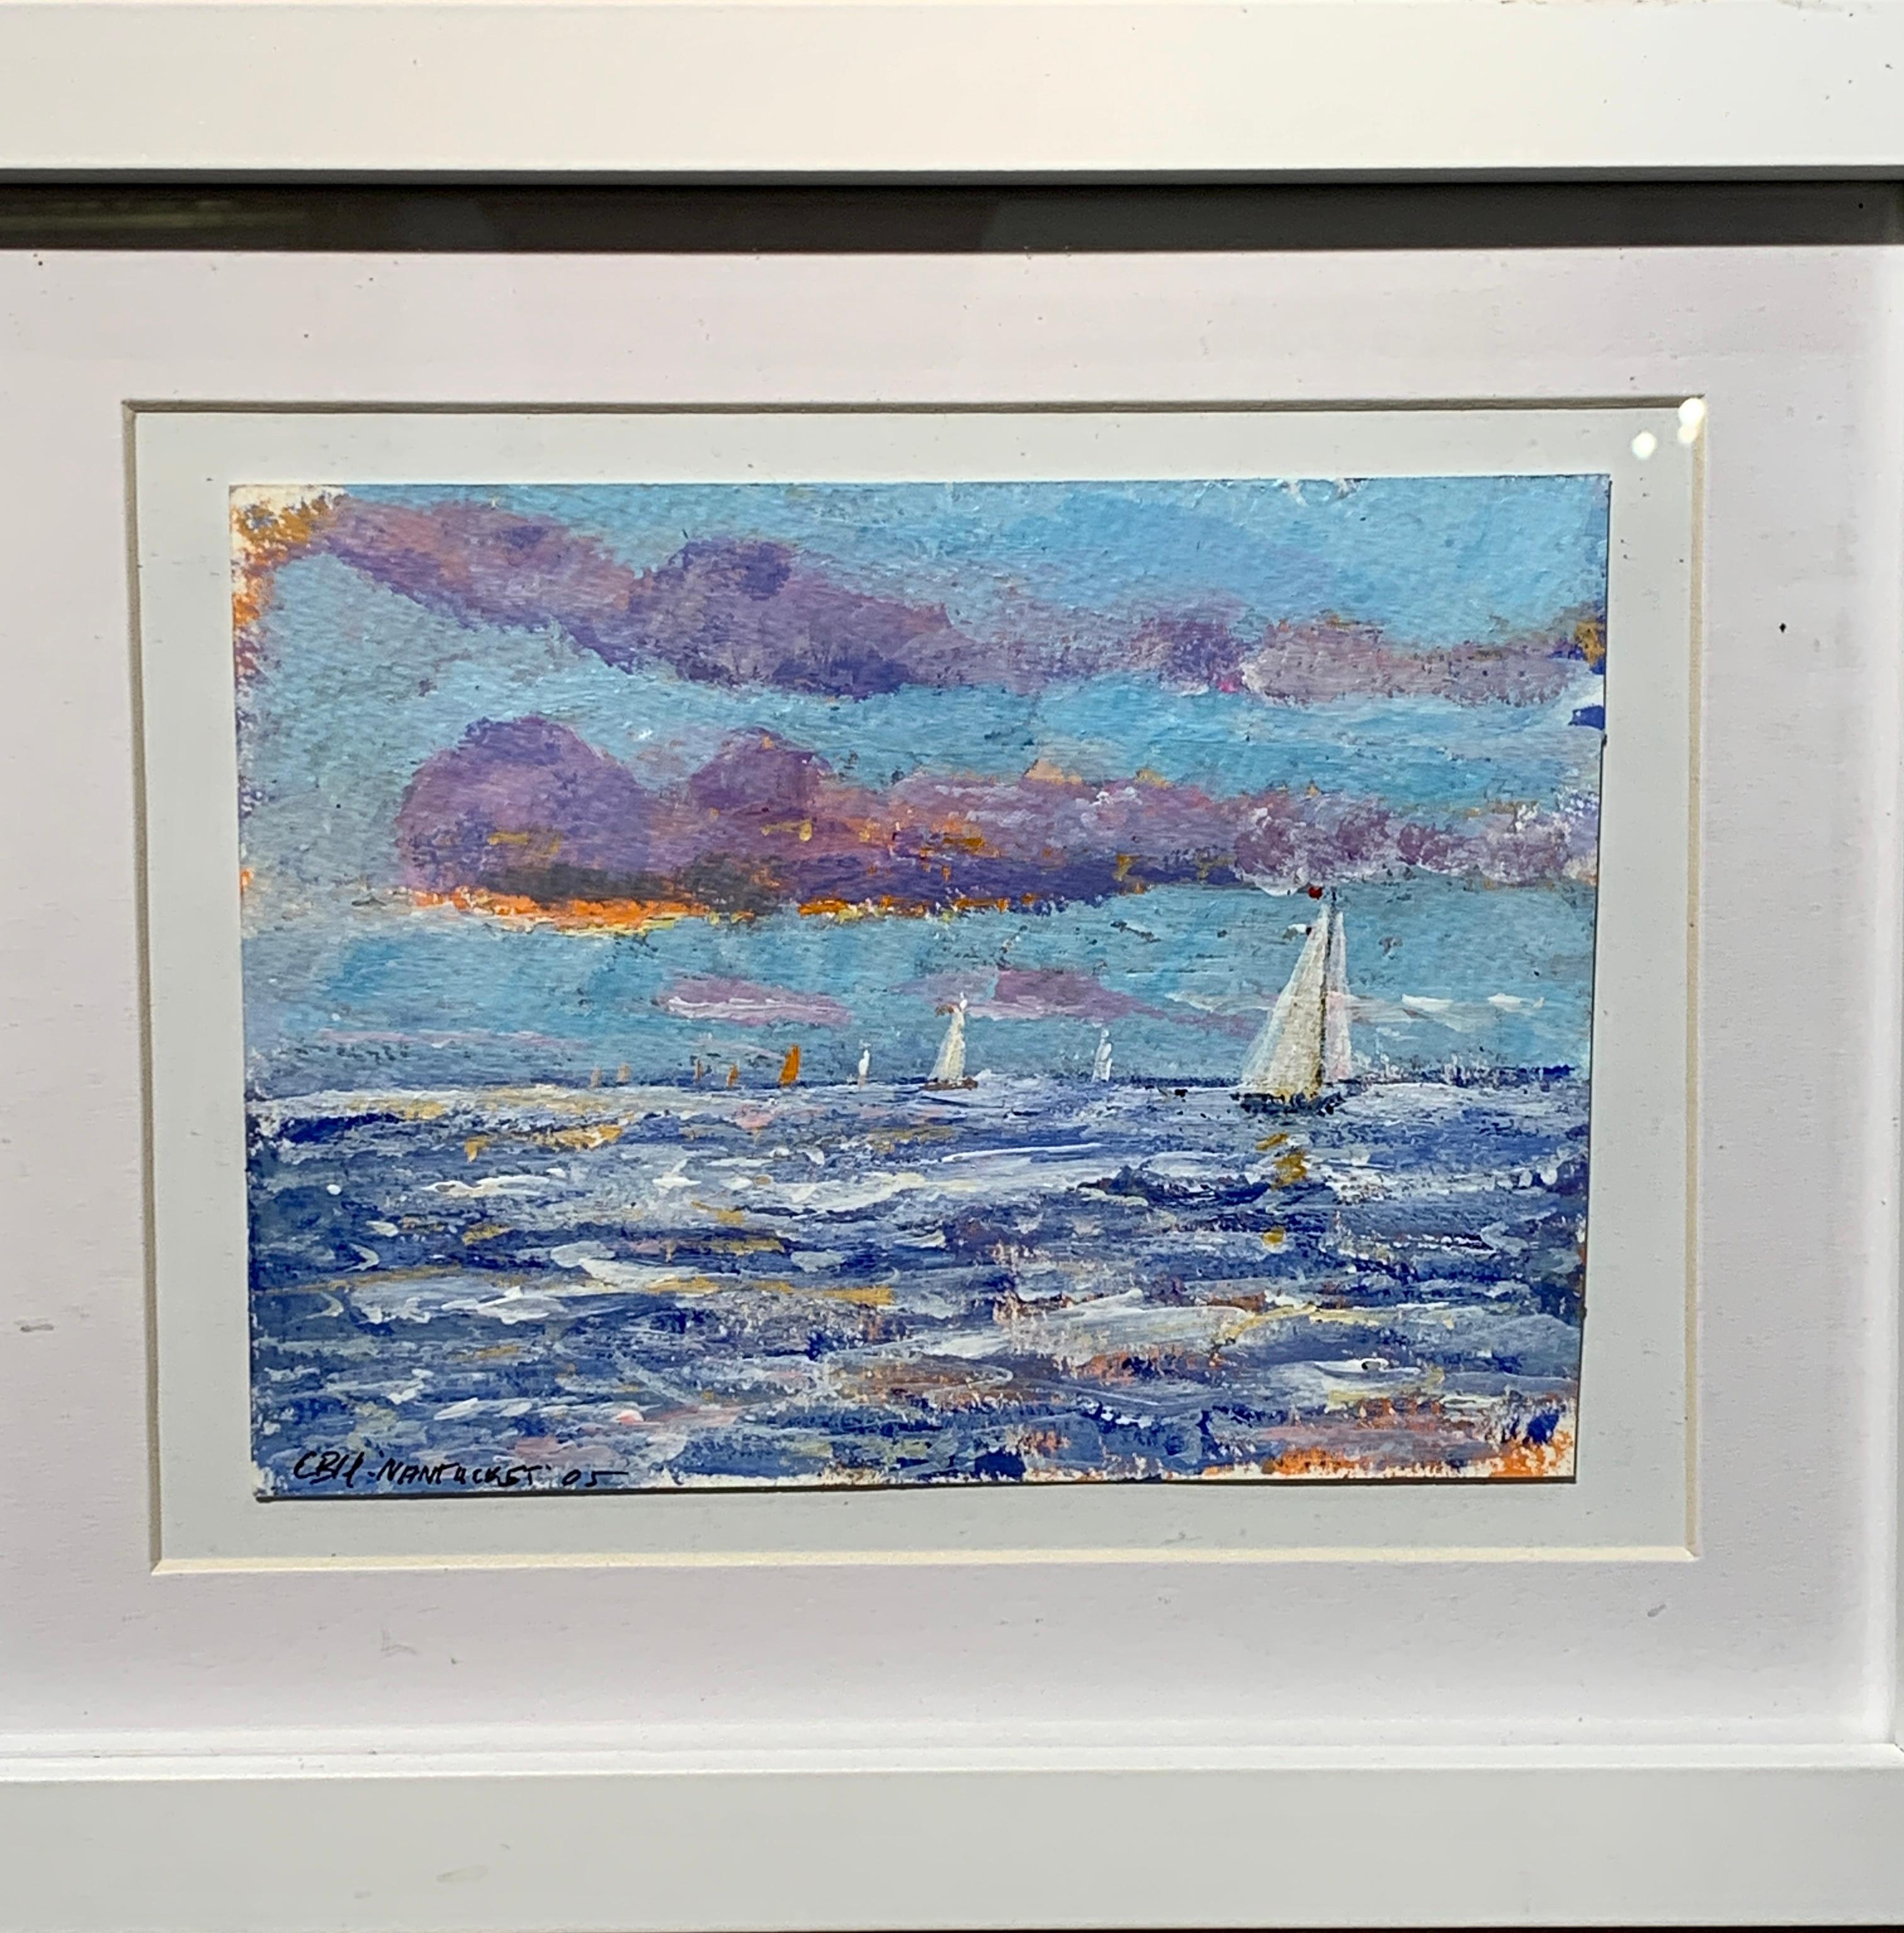 Scène English Impressionist, Yacht naviguant au large de la côte de Nantucket. - Painting de Charles Bertie Hall